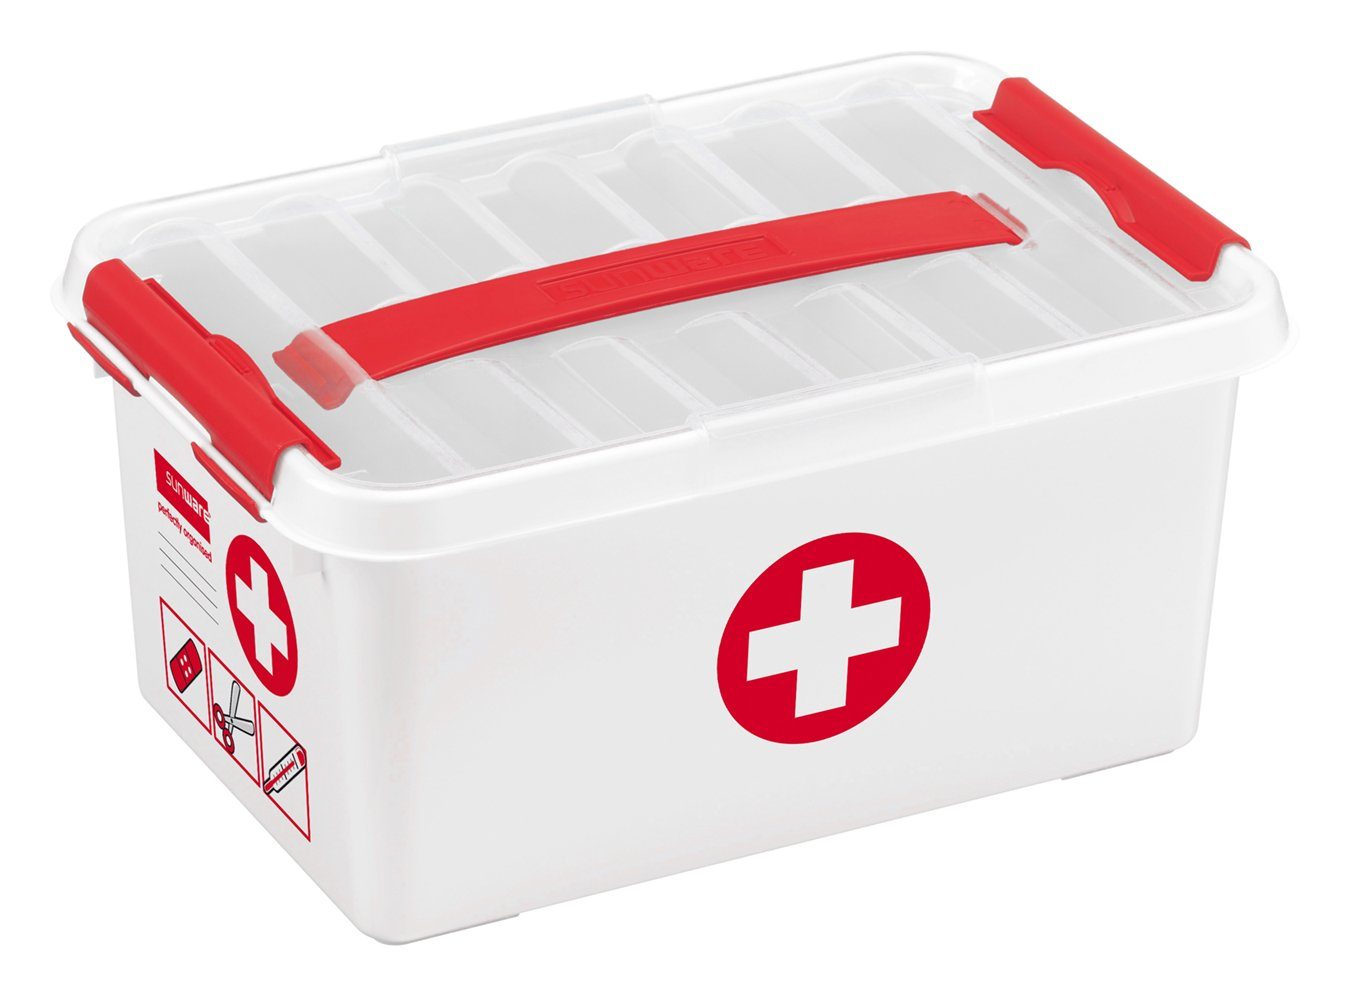 Sunware Aufbewahrungsbox First Aid Box Q-line